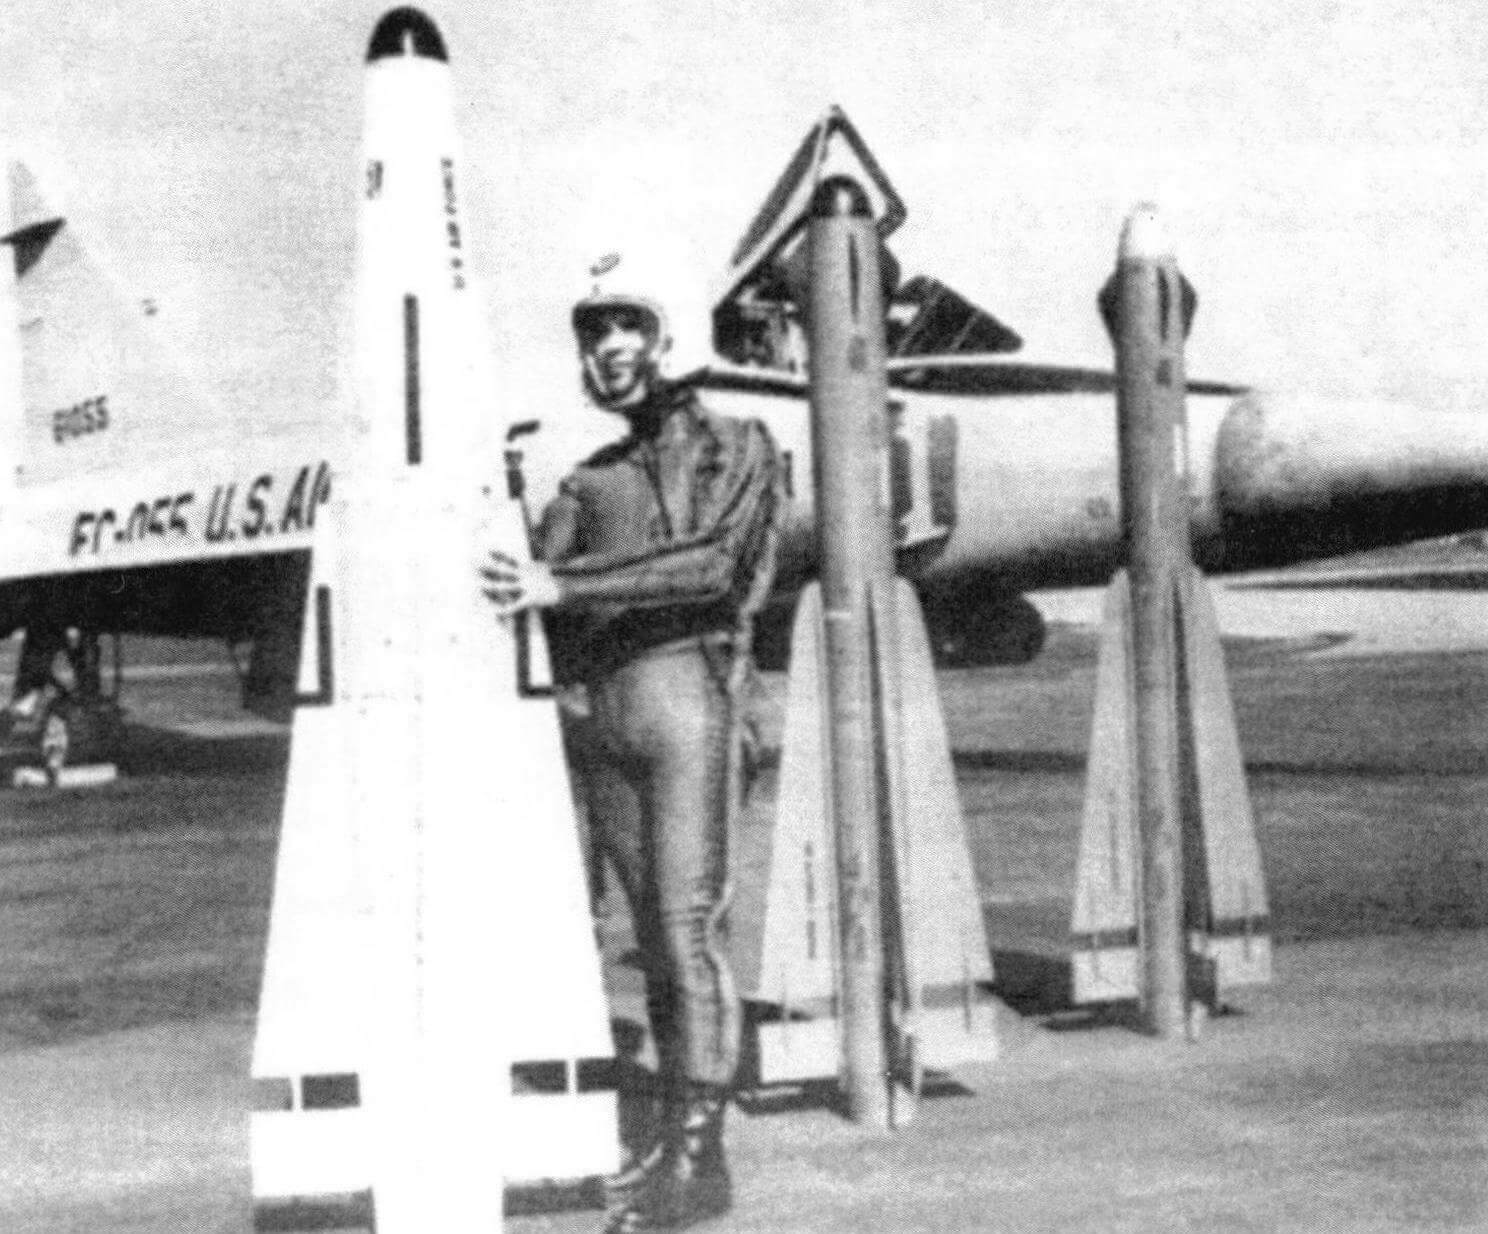 «Длинная рука» системы «Хьюз» ЕСF/FCS - ракеты «воздух-воздух». Летчик-испытатель Крис Смит держит ракету «Биг Бумер» АIМ-26А (оригинальное обозначение GAR-11А) «Супер Фалкон» с ядерной БЧ. За ним стоят стандартные ракеты АІМ-4А (GAR-11A) «Фалкон» с полуактнвным радиолокационным самонаведением и АІМ-4С (GAR-2А) «Фалкон»с пассивным инфракрасным самонаведением